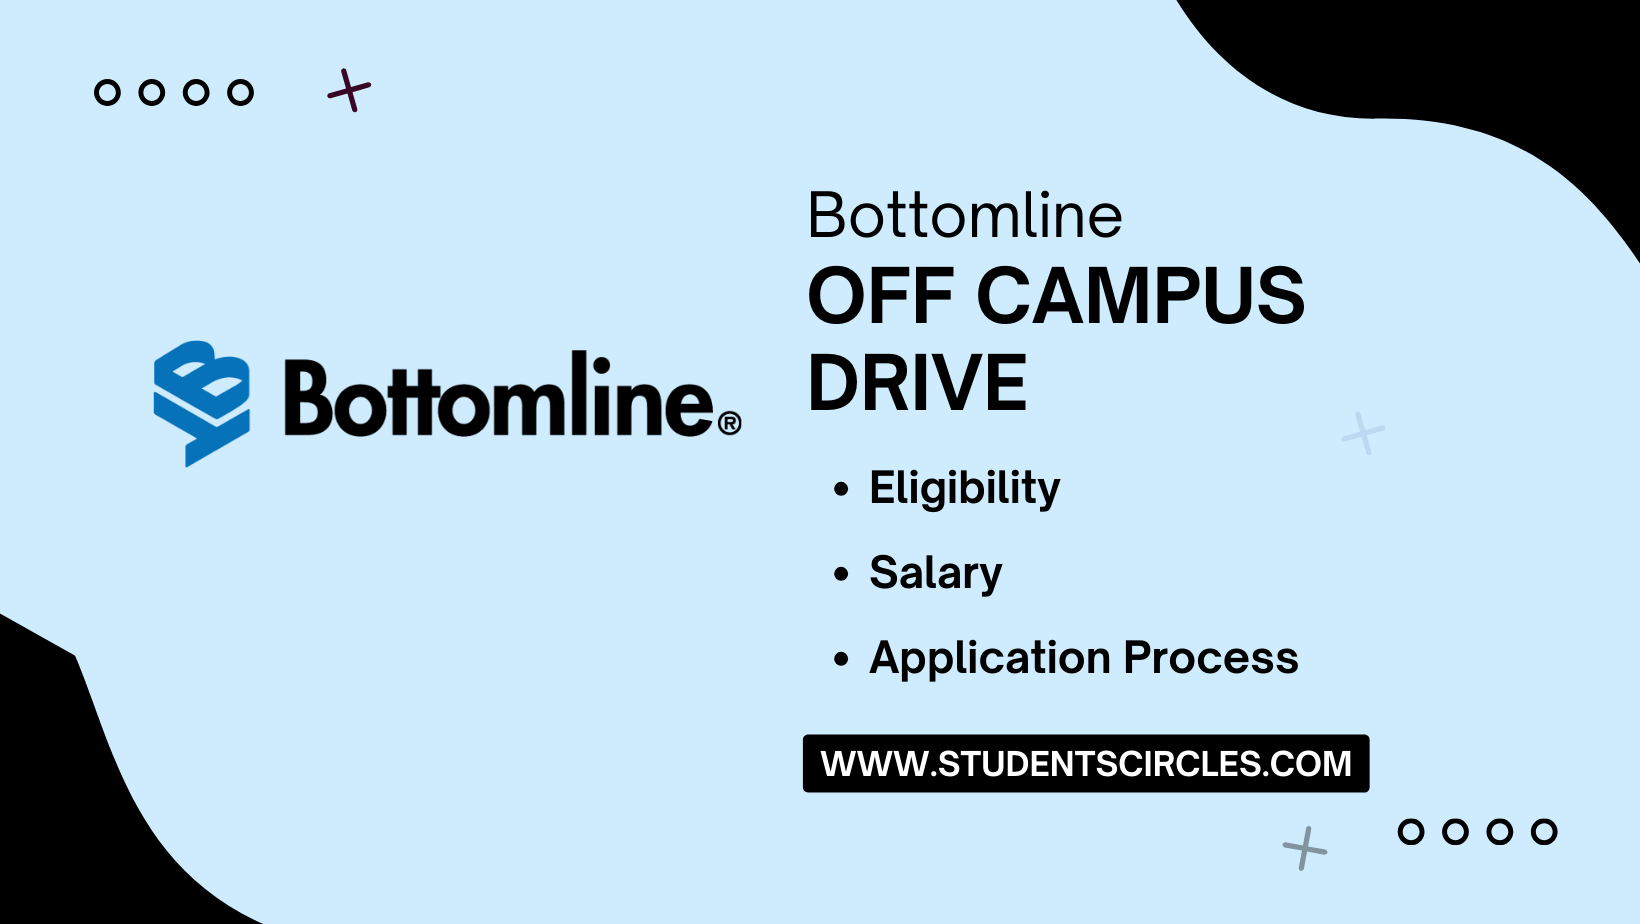 Bottomline Off Campus Drive